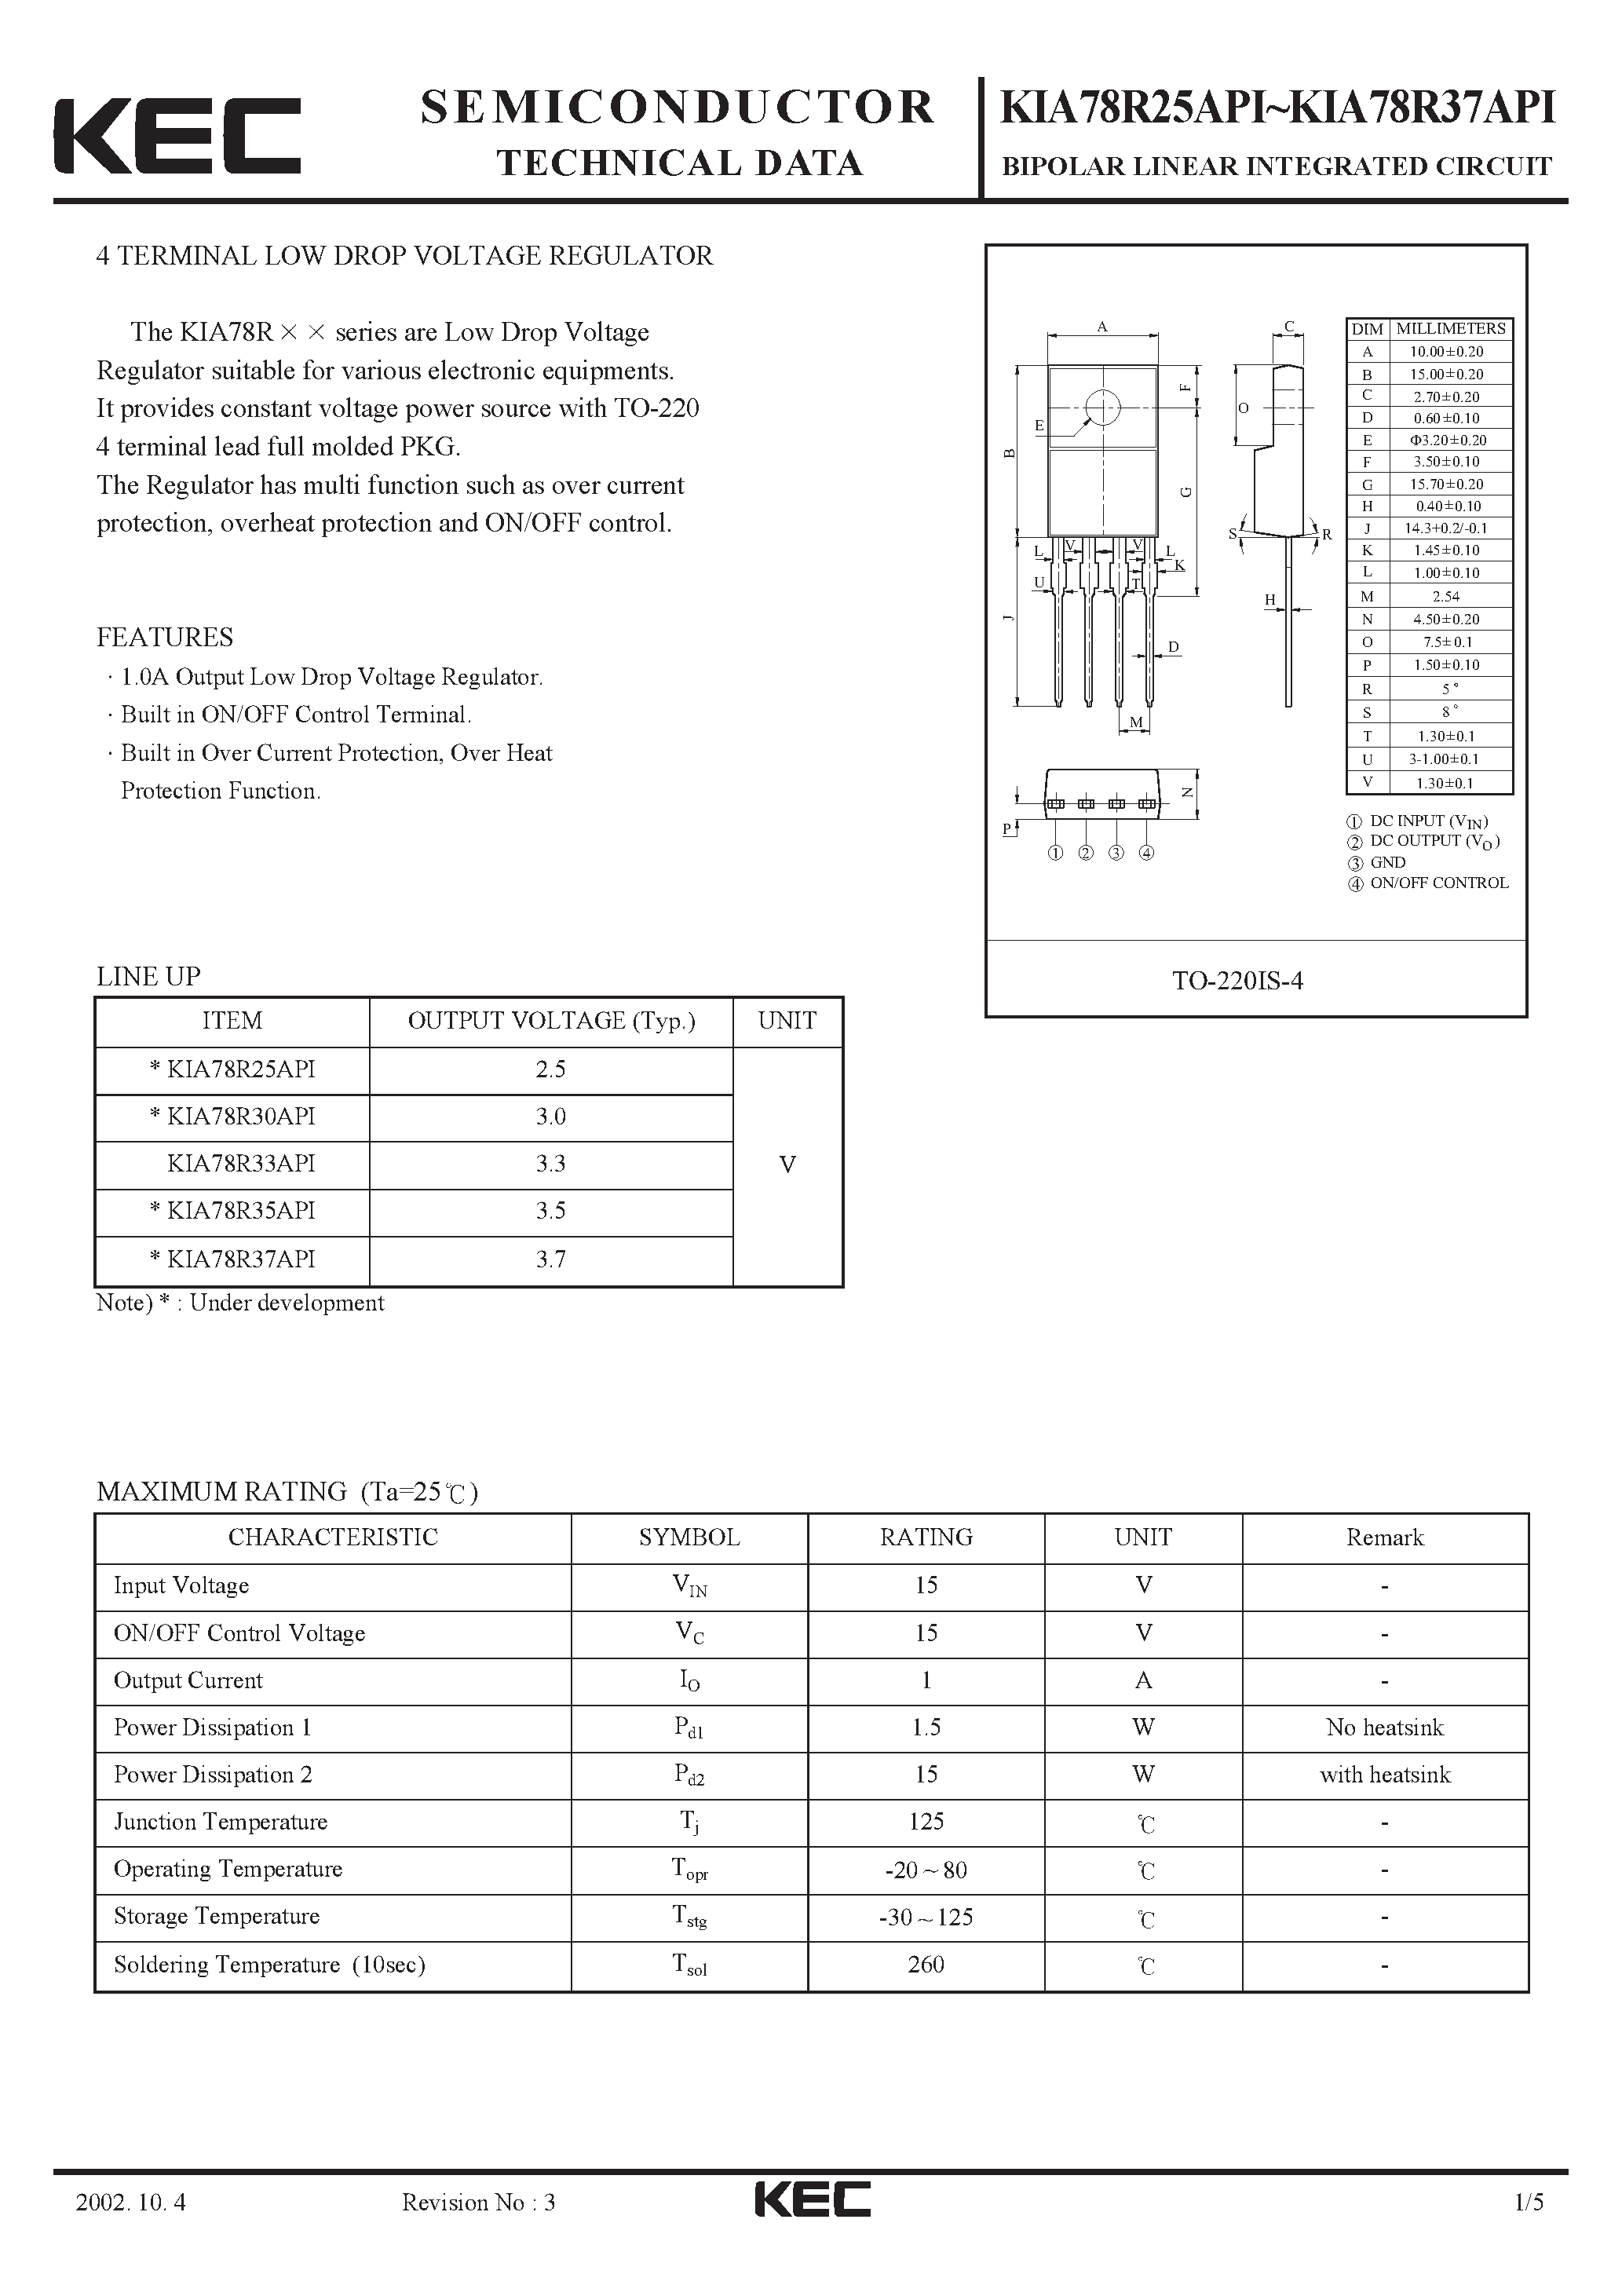 Datasheet KIA78R25API - BIPOLAR LINEAR INTEGRATED CIRCUIT (4 TERMINAL LOW DROP VOLTAGE REGULATOR) page 1